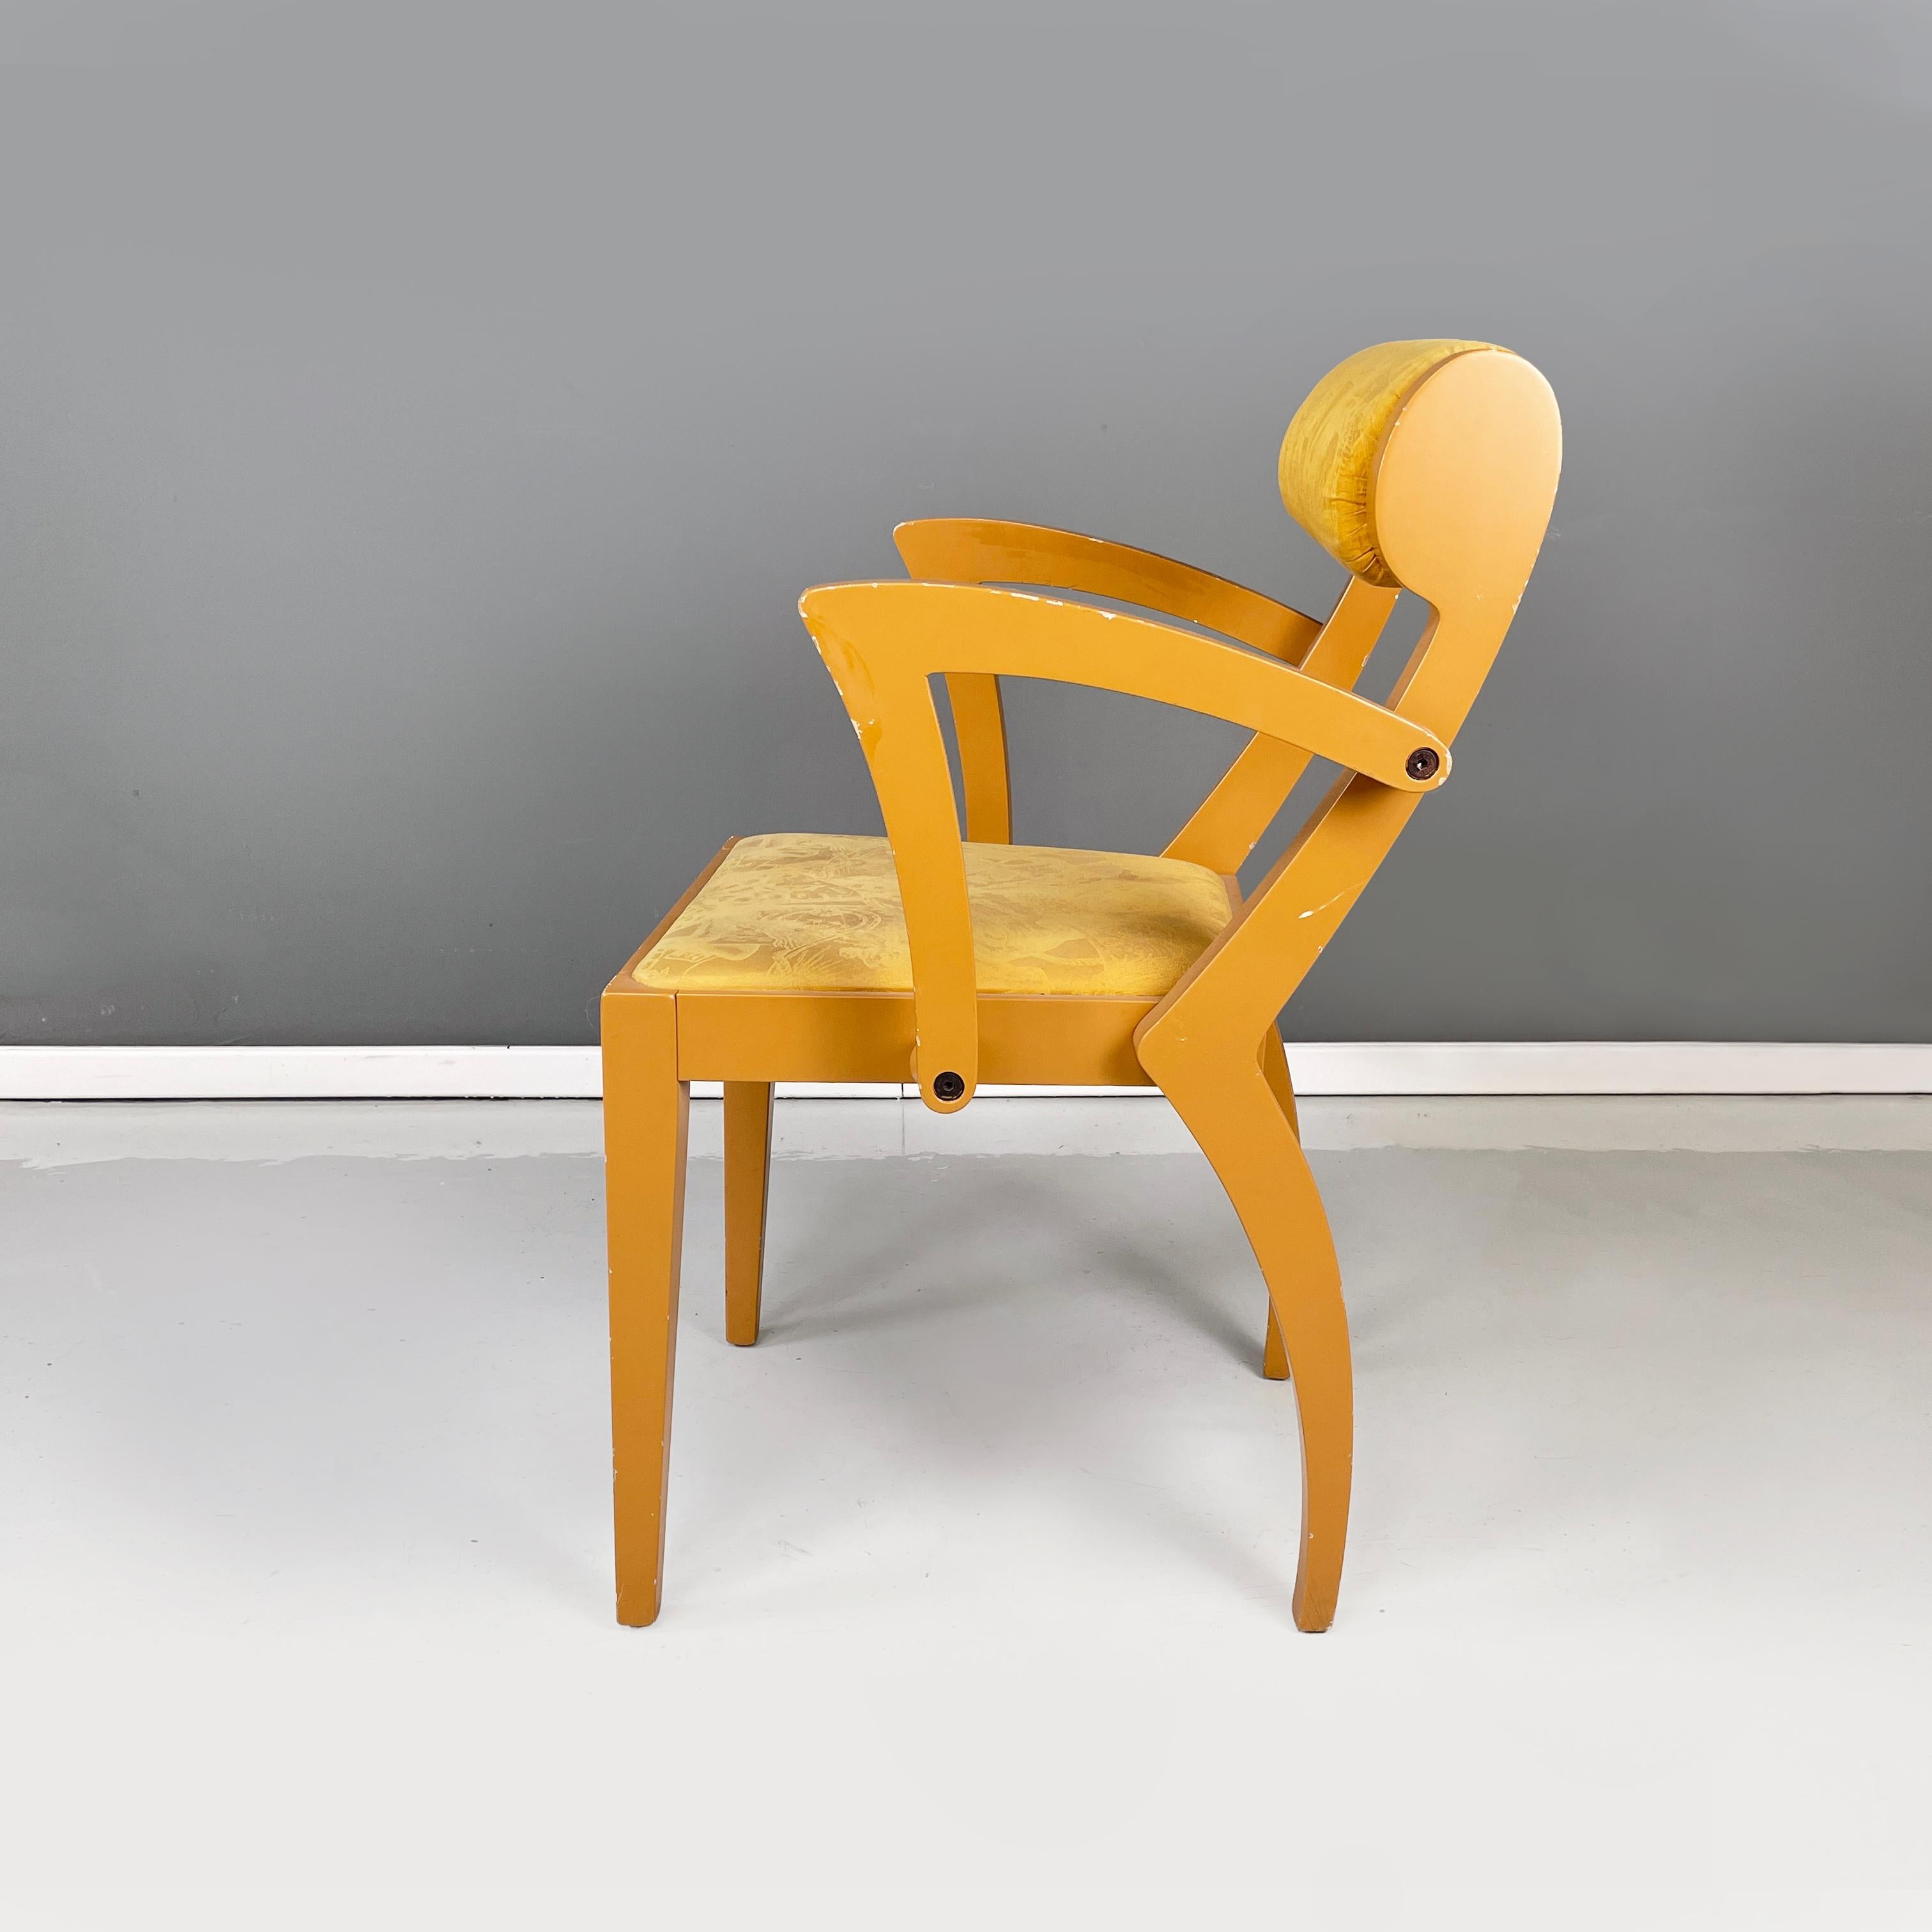 Chaise moderne italienne en bois et tissu jaune par Bros/s, années 1980
Chaise avec structure en bois peint en jaune. Le dossier rembourré, recouvert d'un tissu jaune travaillé, est de forme cylindrique. L'assise carrée est également rembourrée et